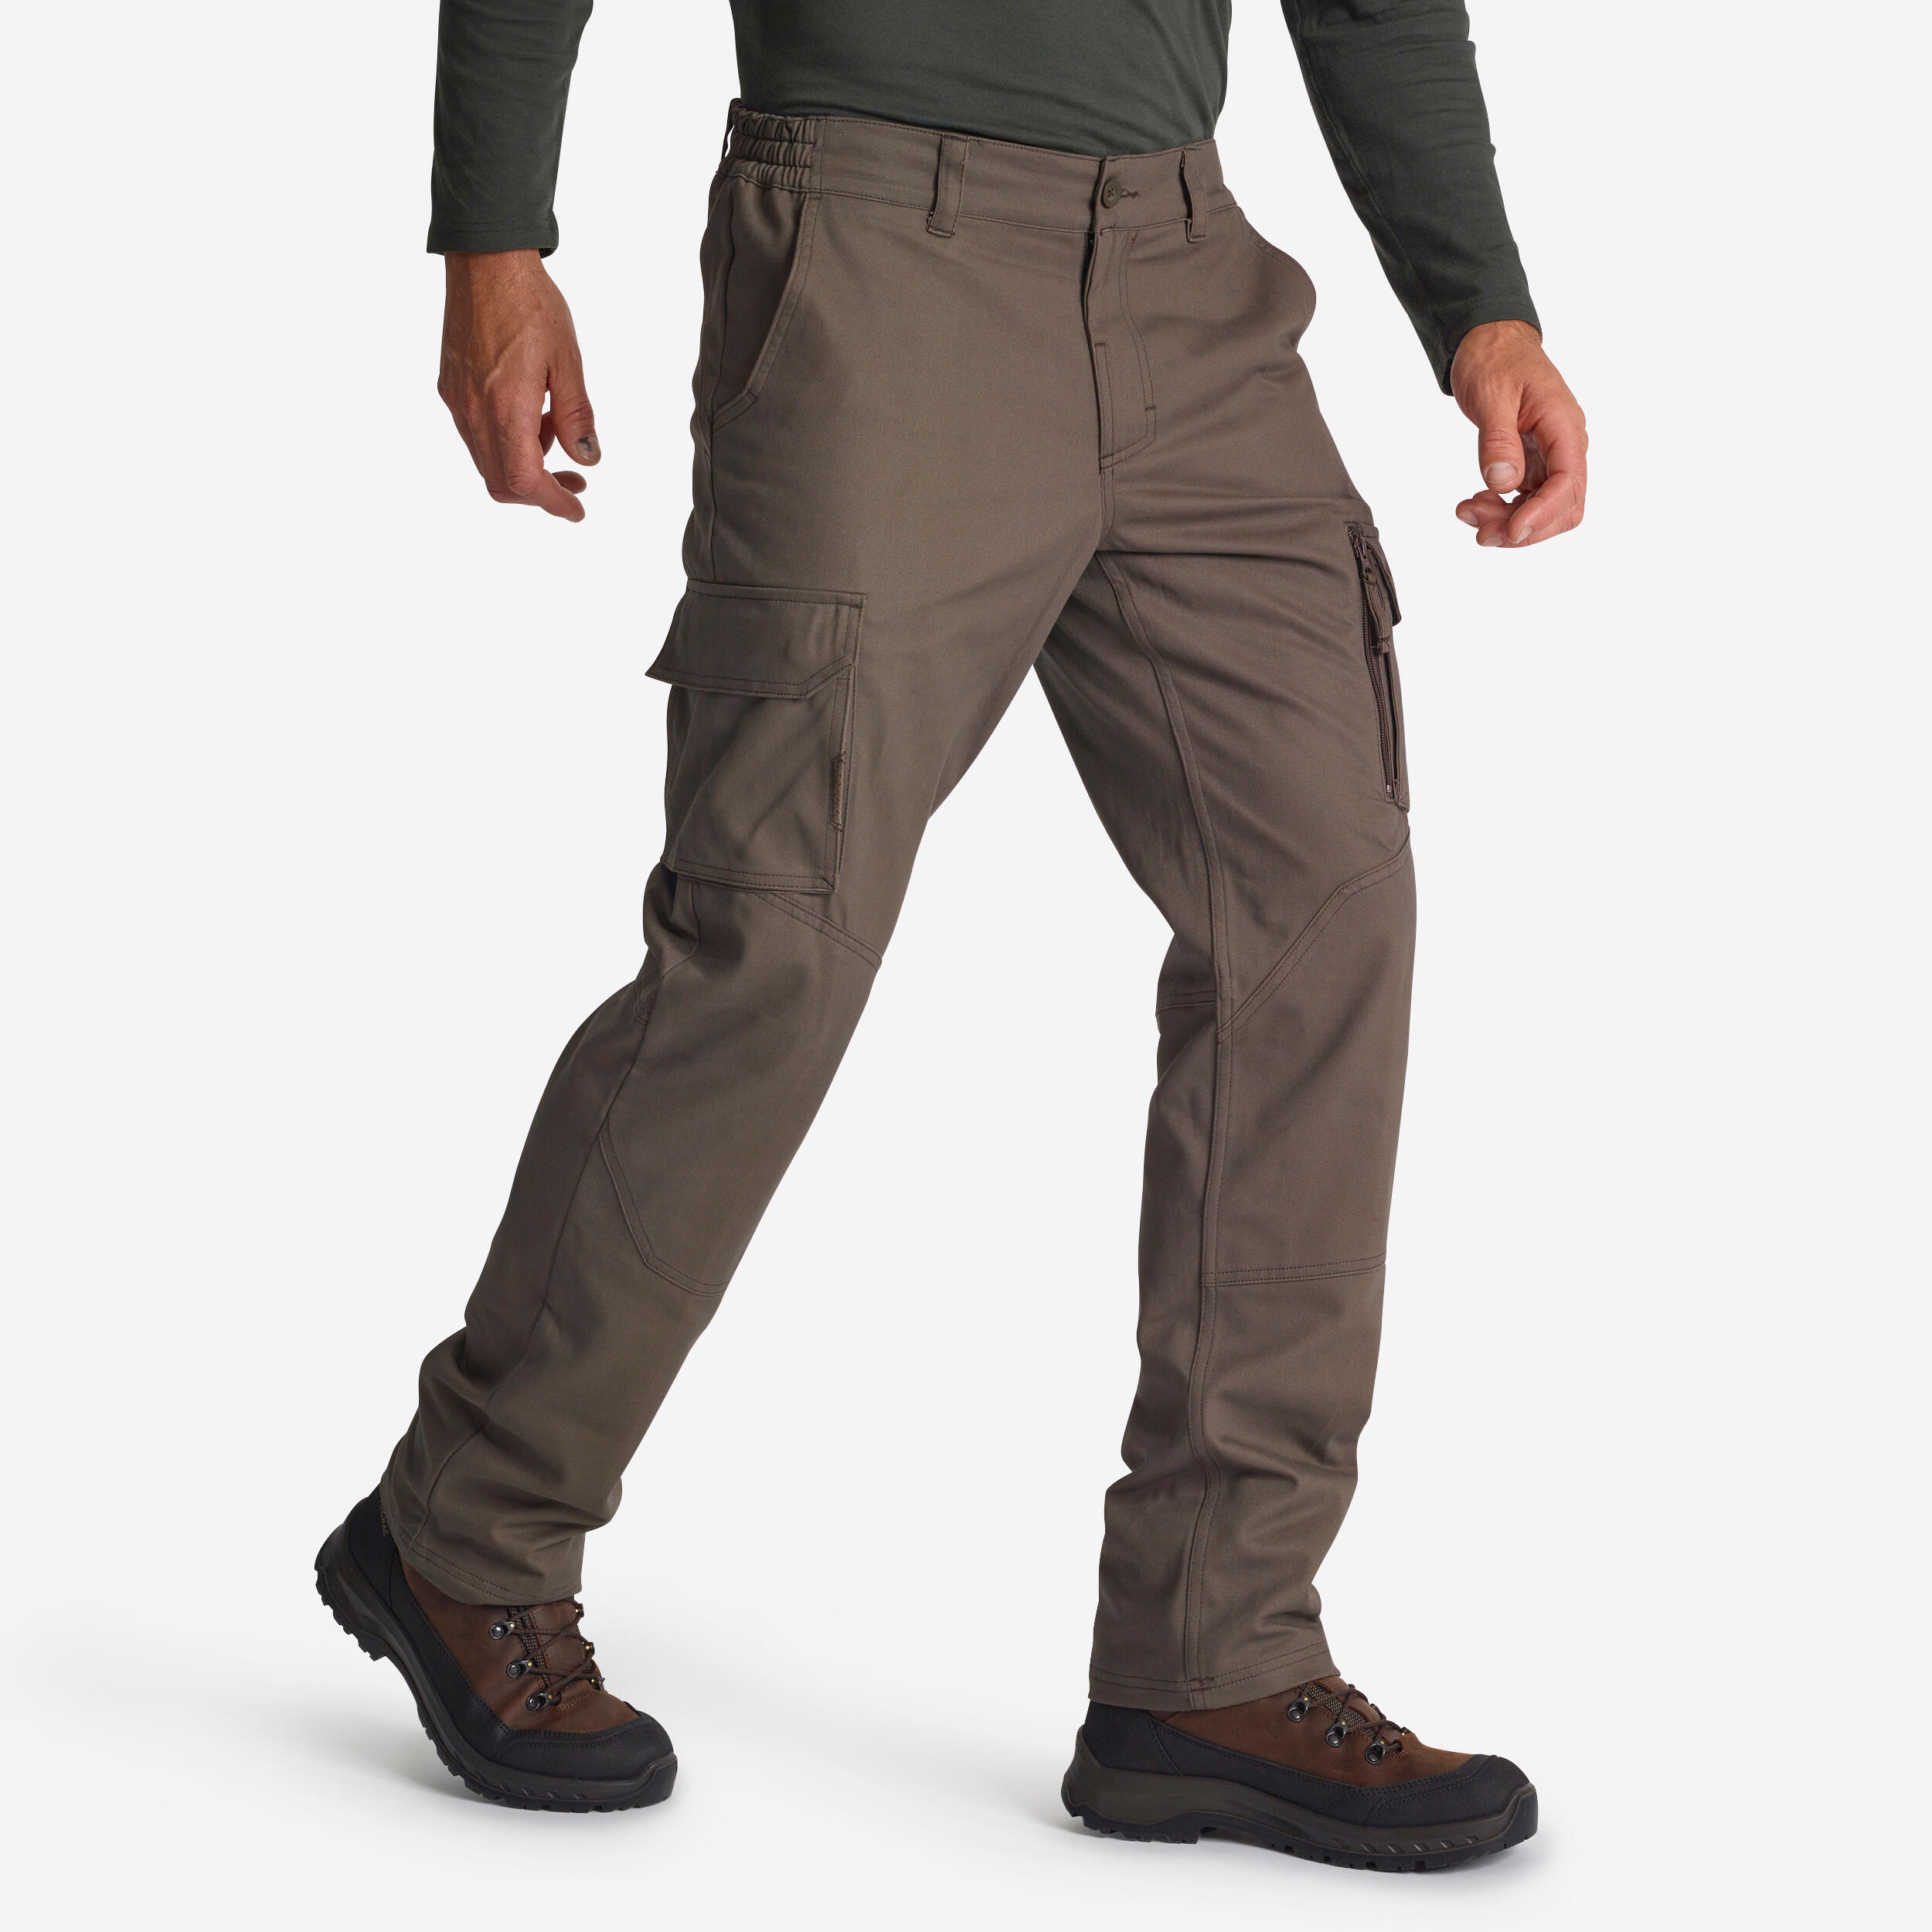 SOLOGNAC Pantalon Chasse R&#xE9;sistant Et Confortable Homme - 520 Marron